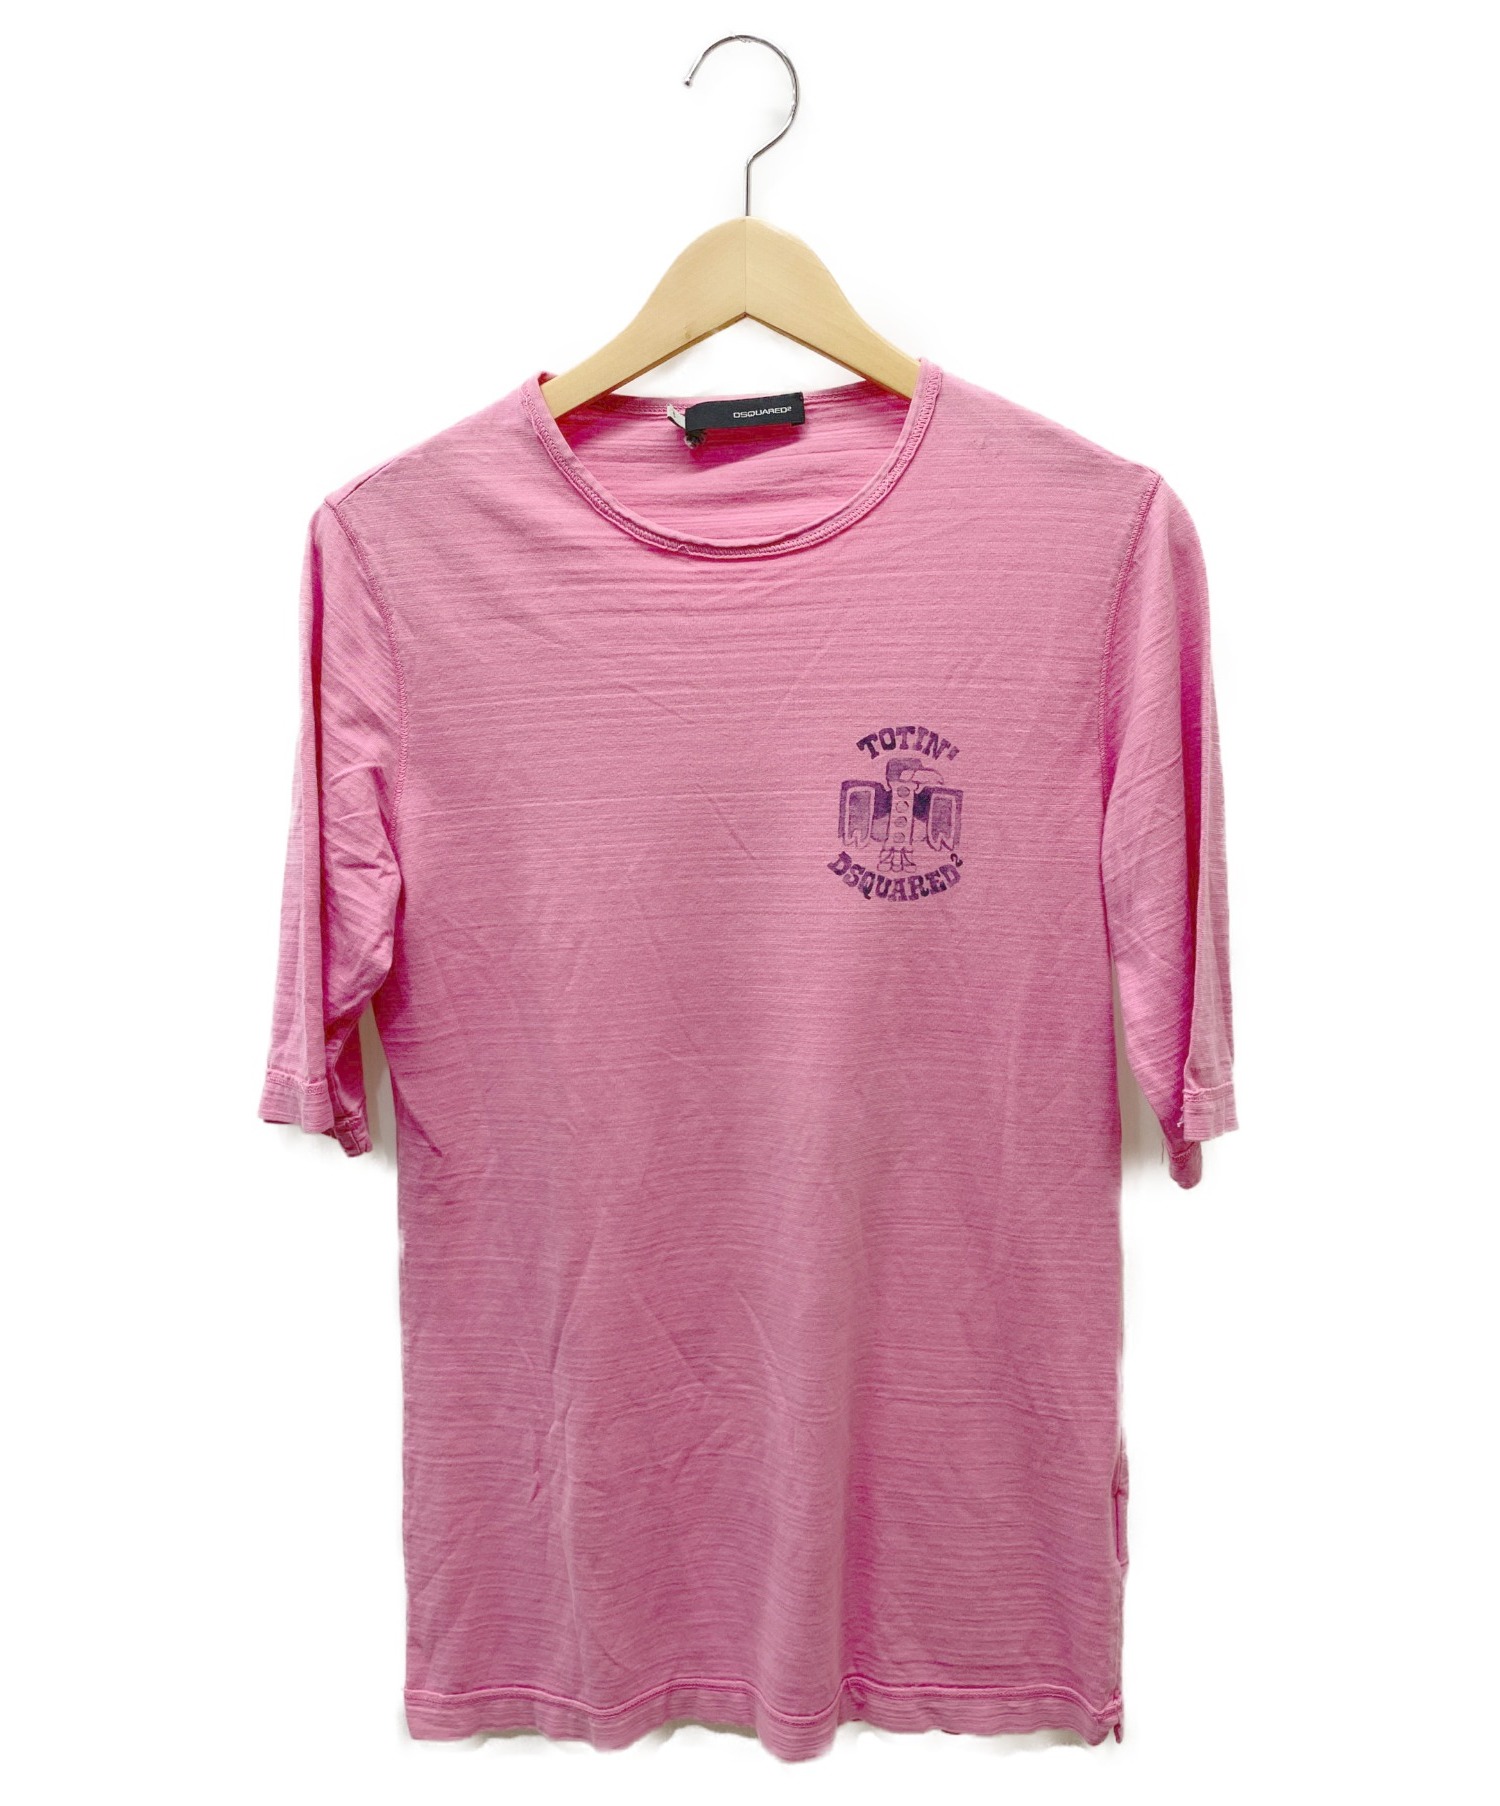 DSQUARED2 (ディースクエアード) プリントTシャツ ピンク サイズ:S